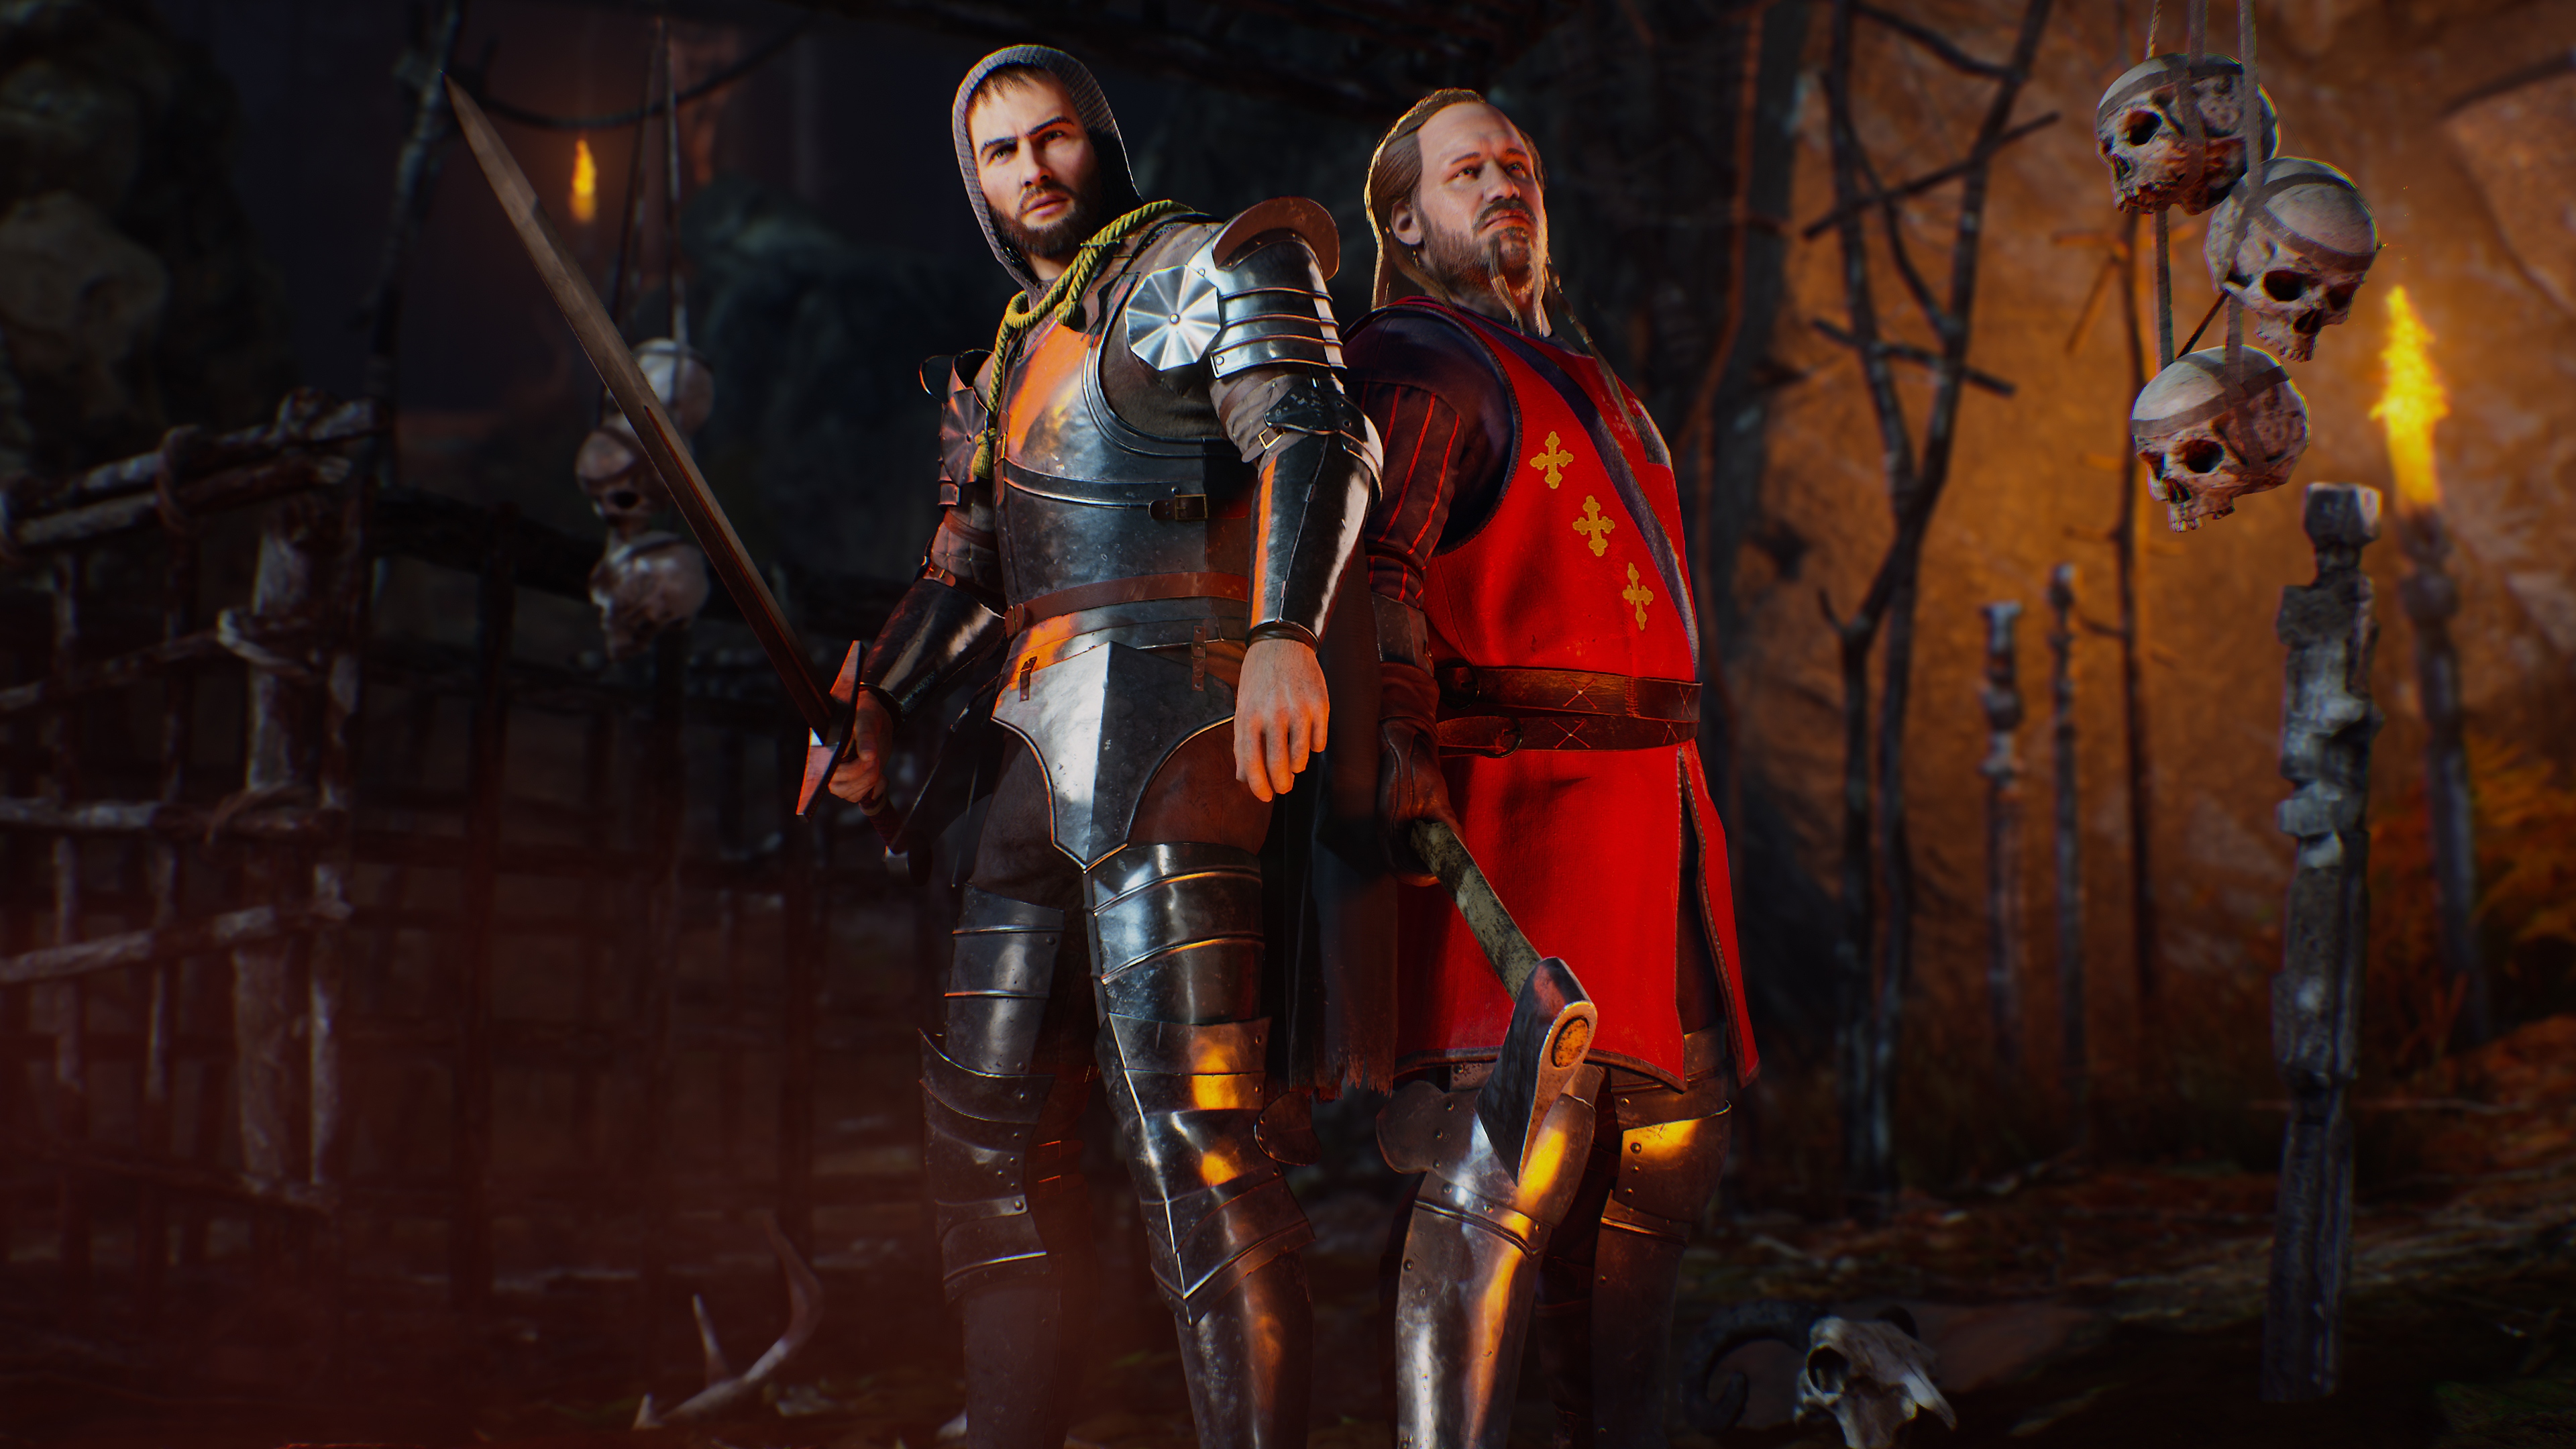 Evil Dead: The Game - Capture d'écran montrant deux personnages habillés en chevaliers